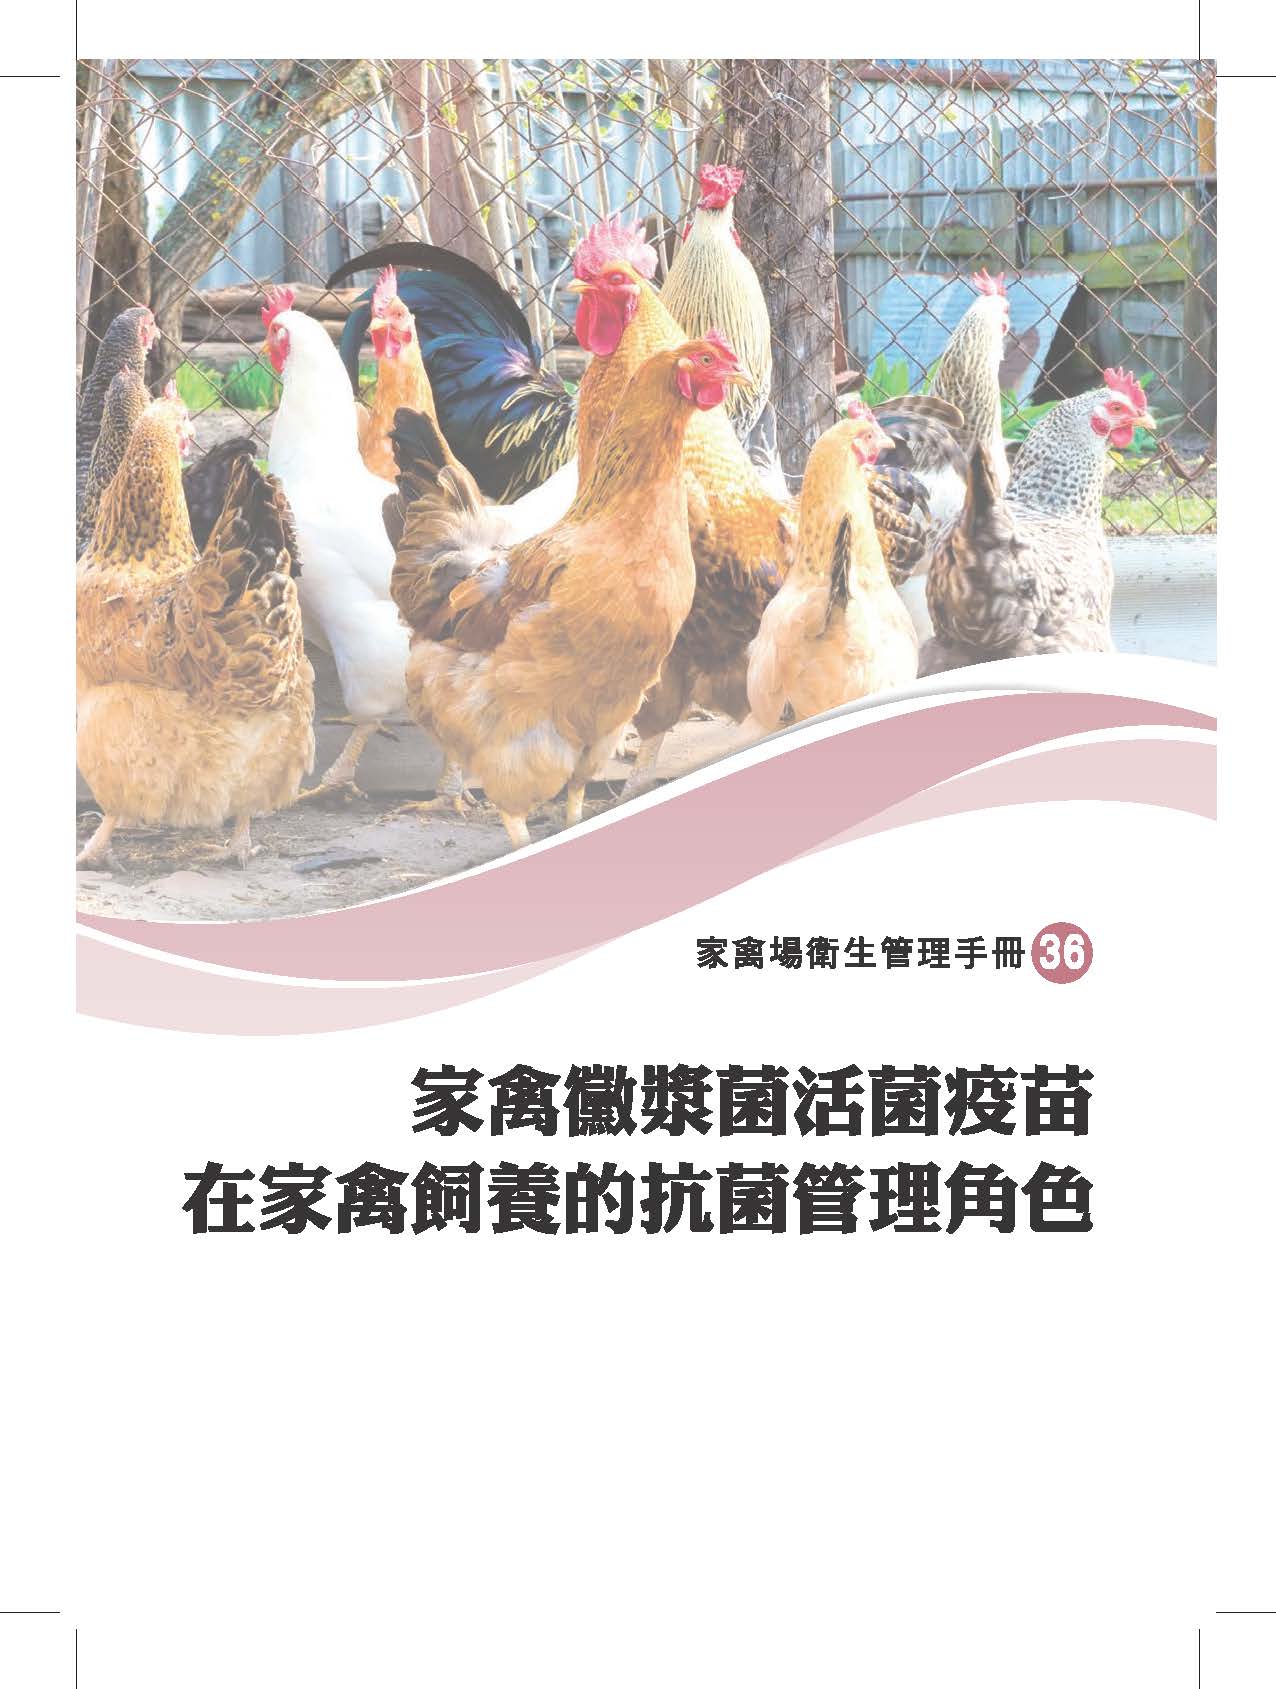 家禽場衛生管理手冊-家禽黴漿菌活化菌疫苗在家禽飼養的抗菌管理角色